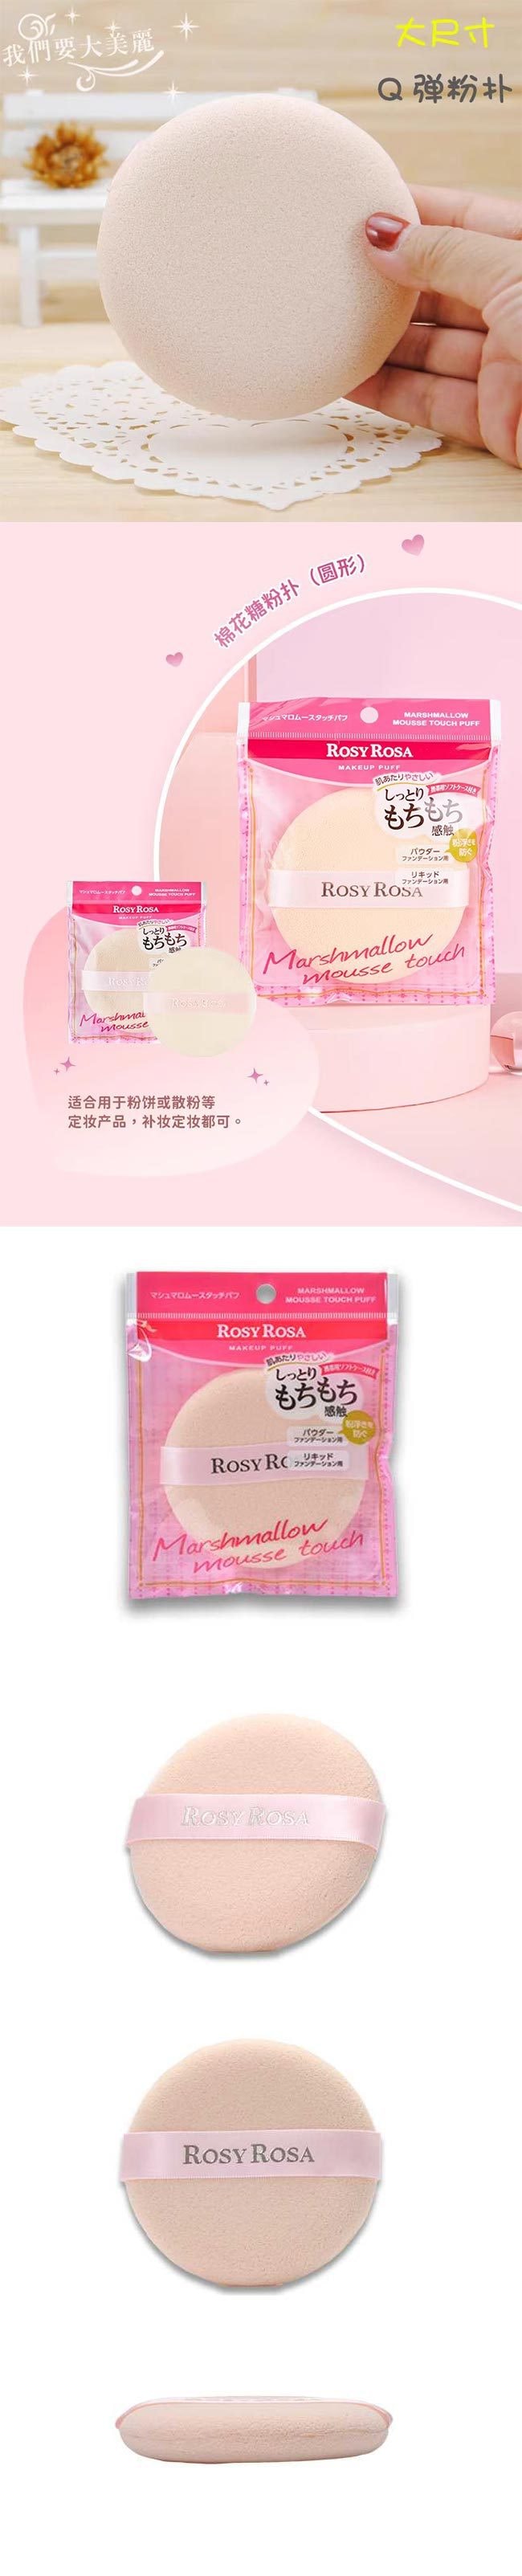 【日本直邮】Rosy Rosa 散粉扑圆形气垫粉扑 1枚装